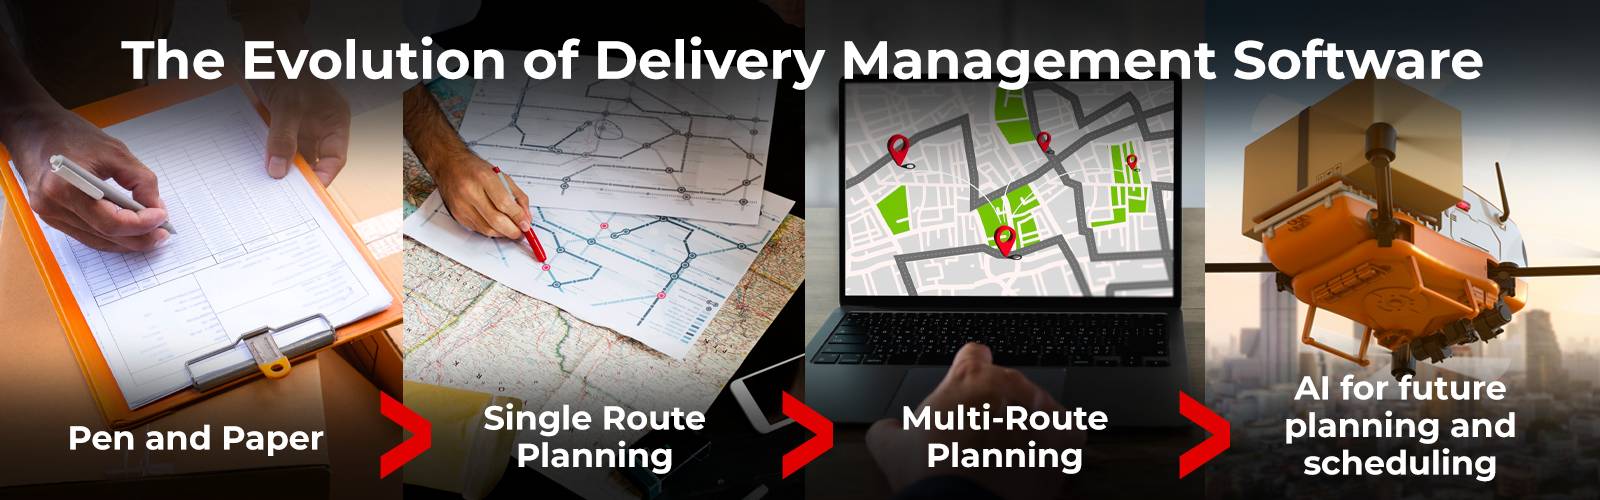 Evolution of Delivery Management Software